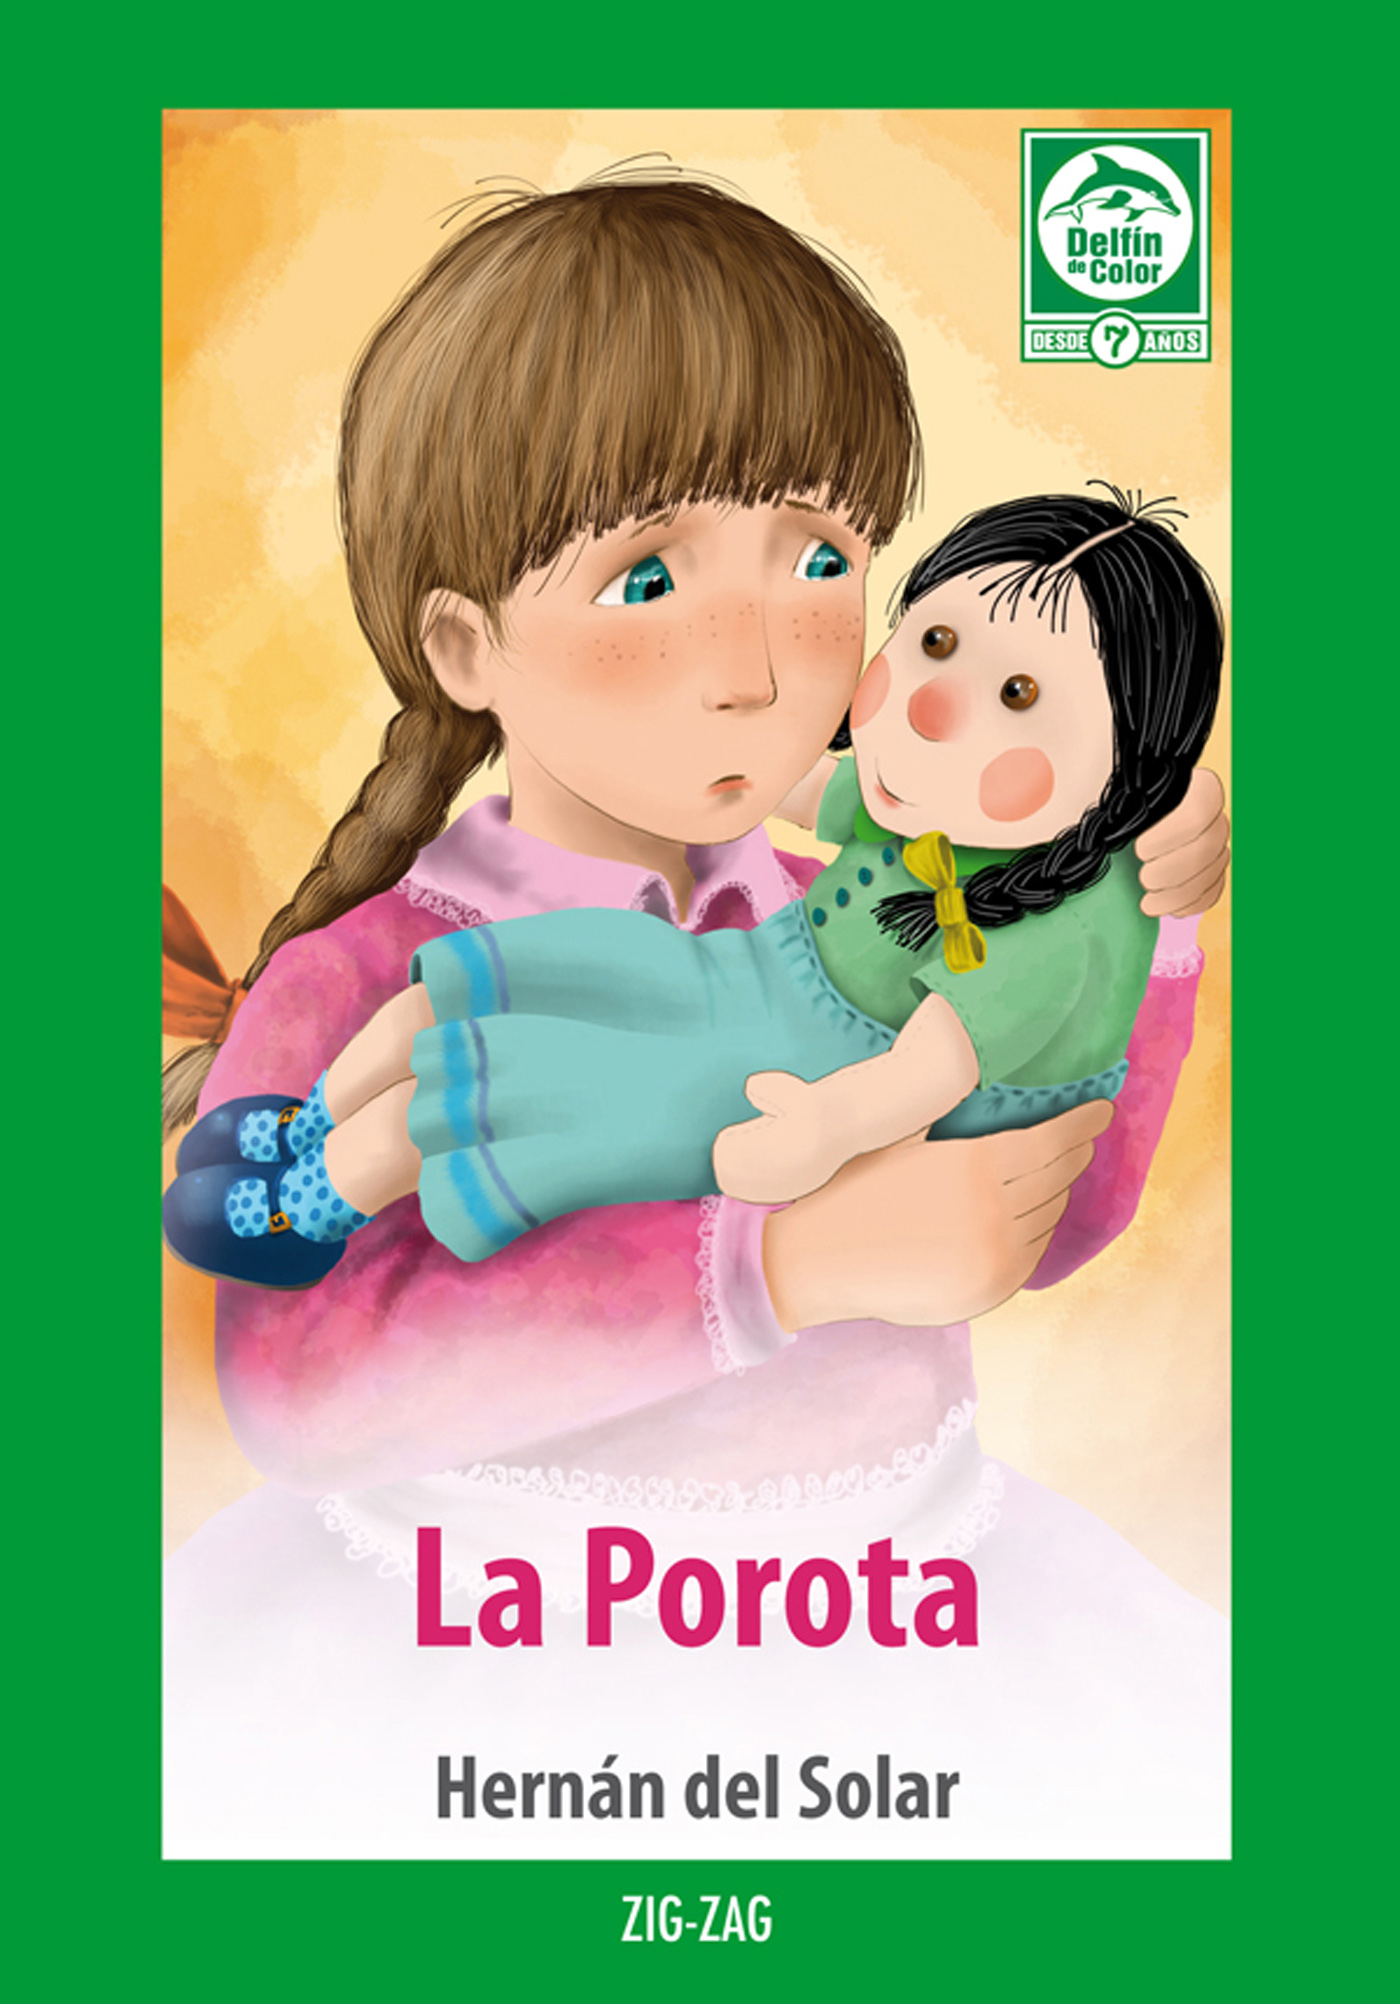 Libro de manualidades para niñas y niños - Librería Lemos